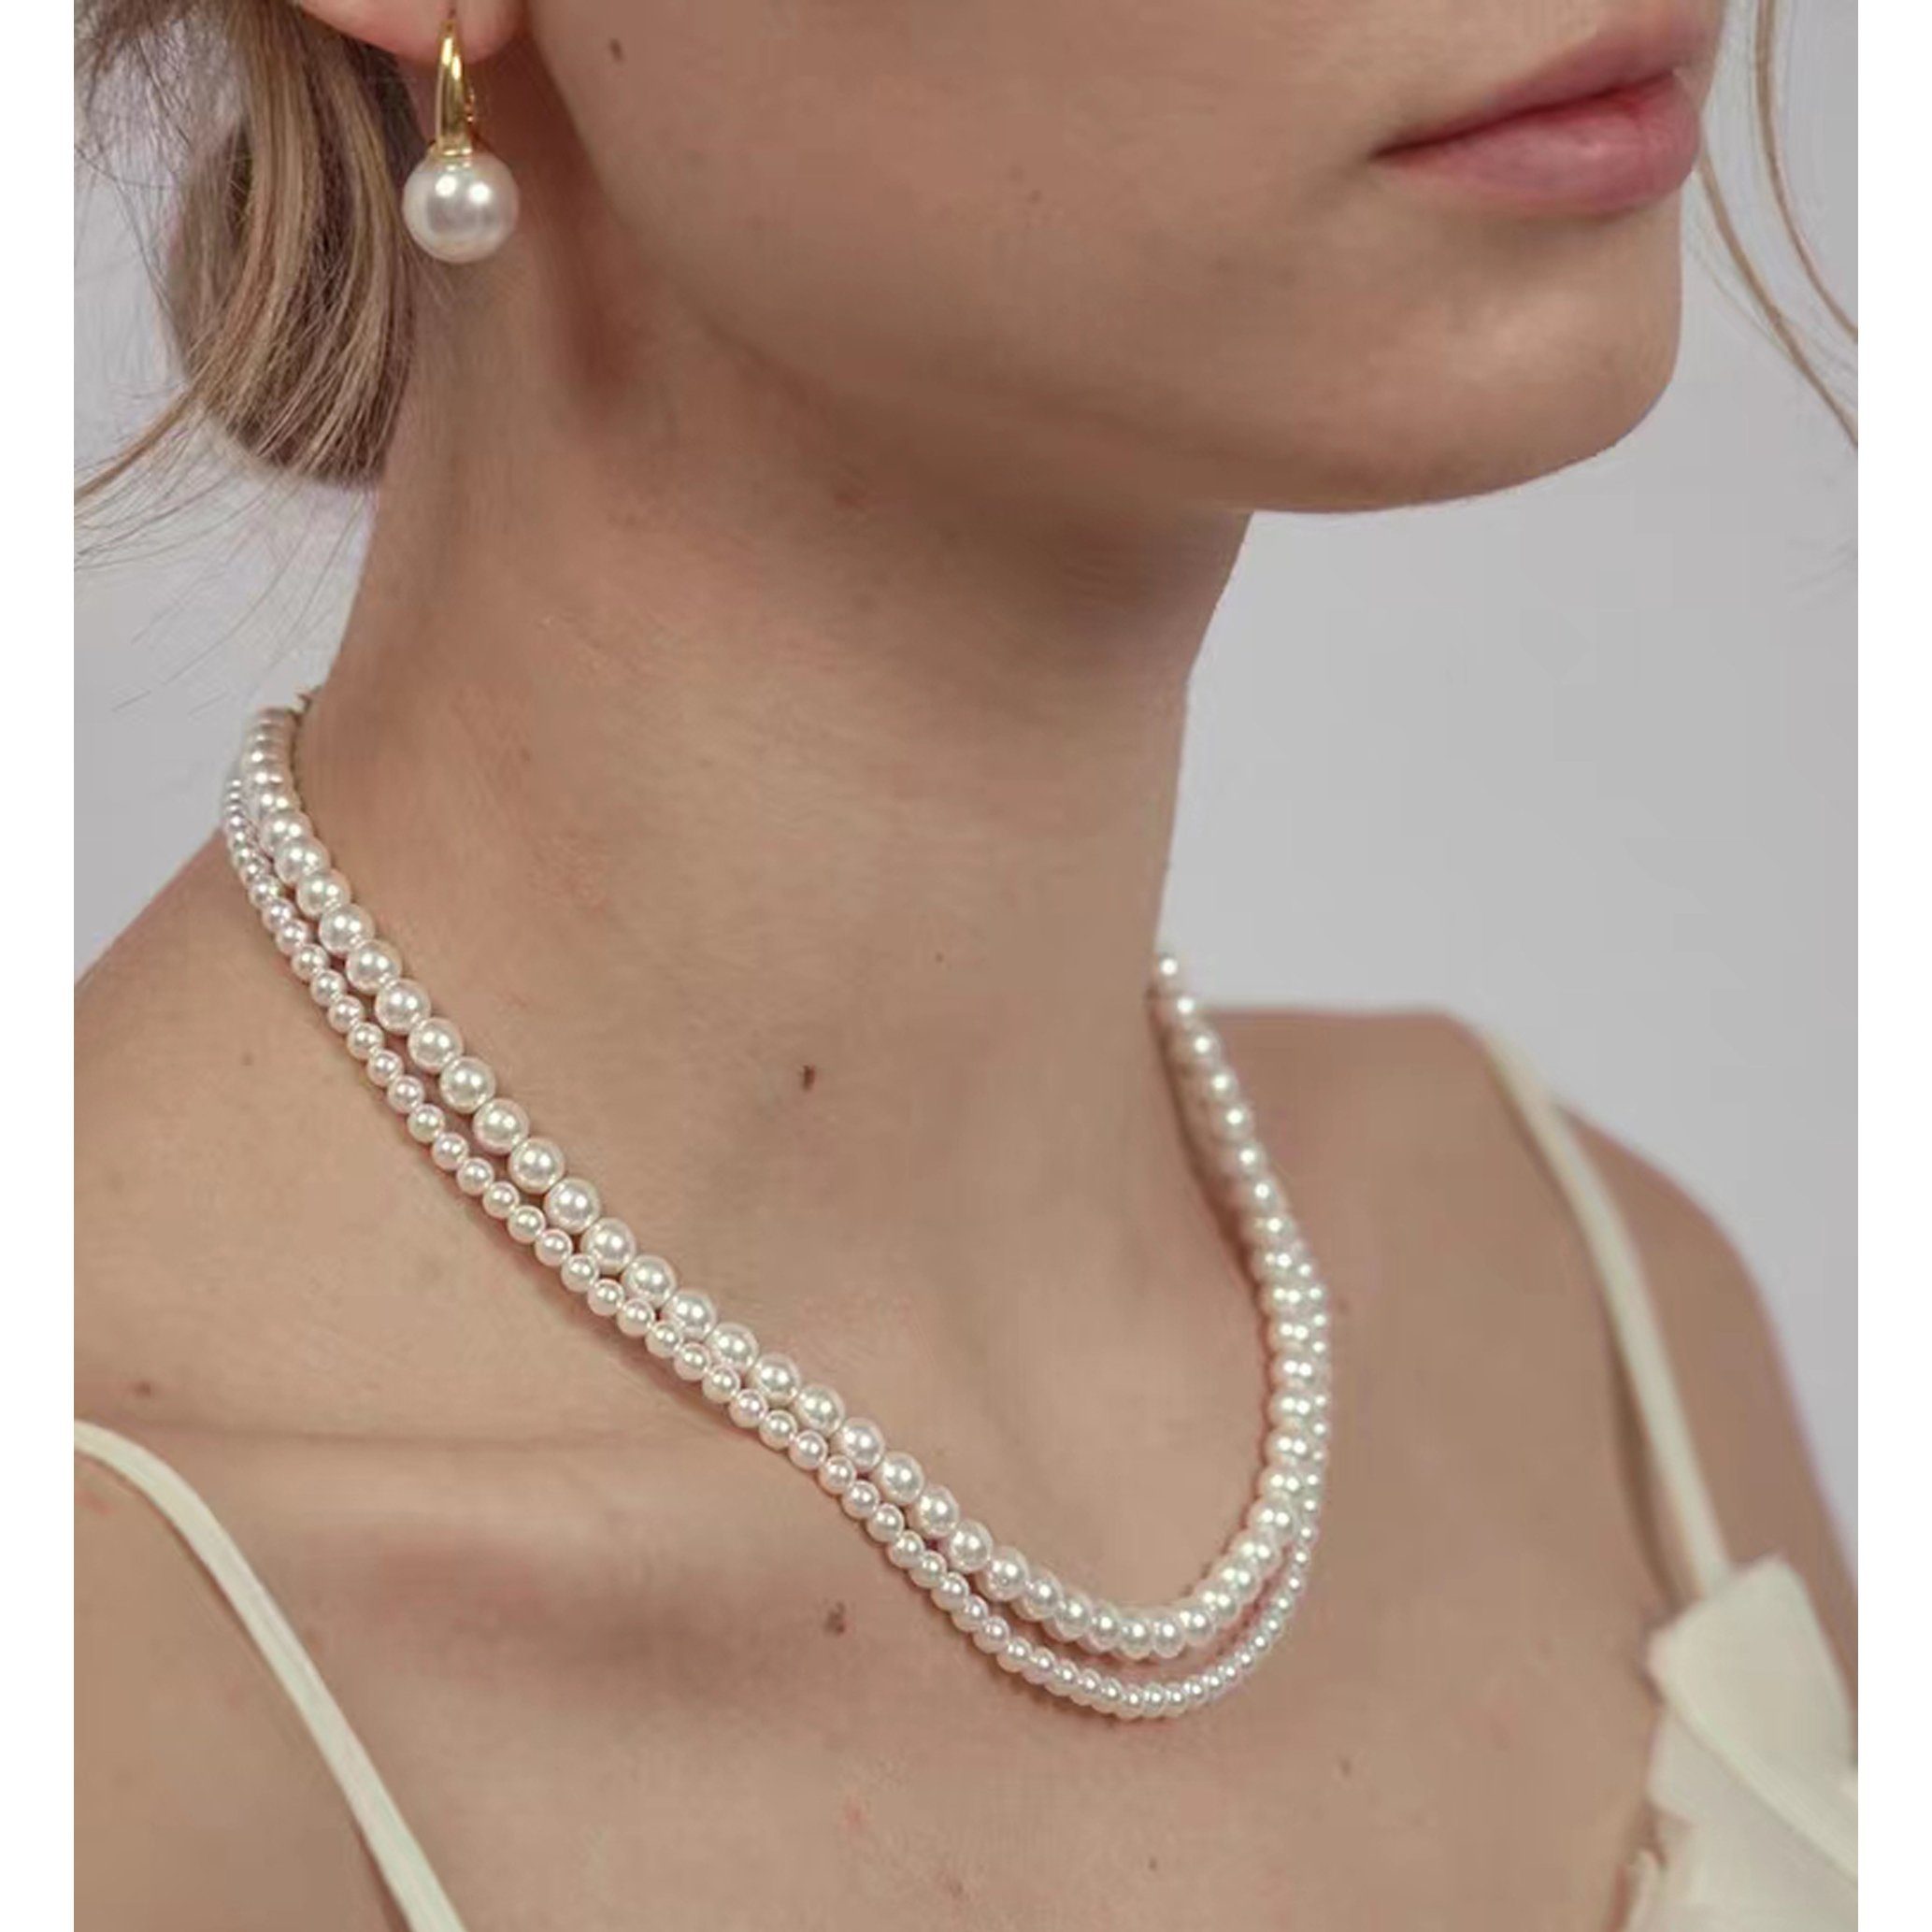 GOLDEN Perlenkette Kristall Perlen Halskette, Swarovski 5810 Perlen Runde Crystal Pearls Halskette 45cm + 5cm